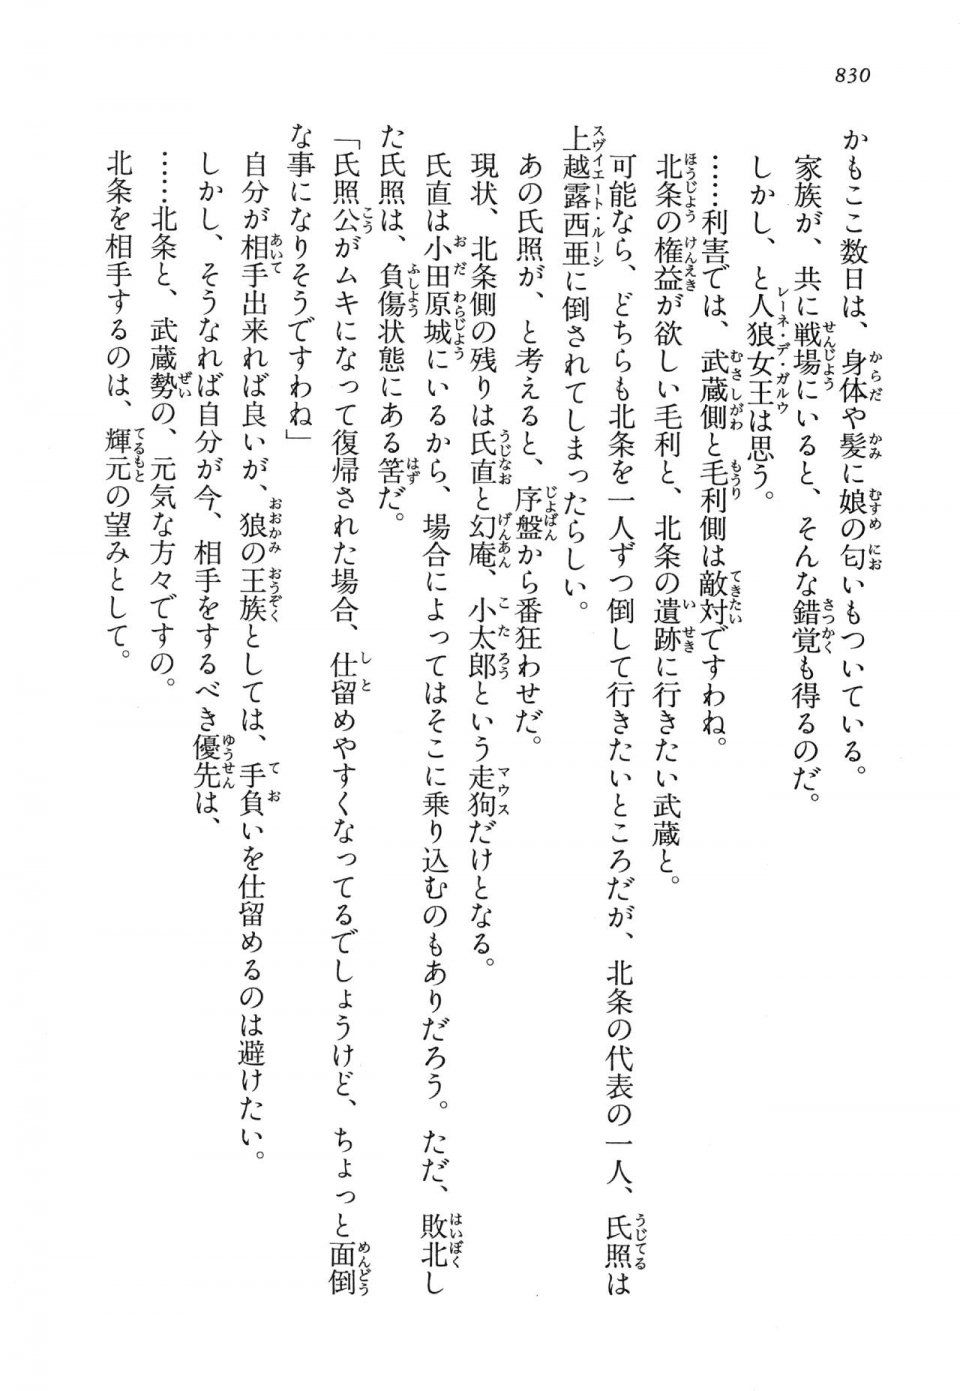 Kyoukai Senjou no Horizon LN Vol 14(6B) - Photo #830